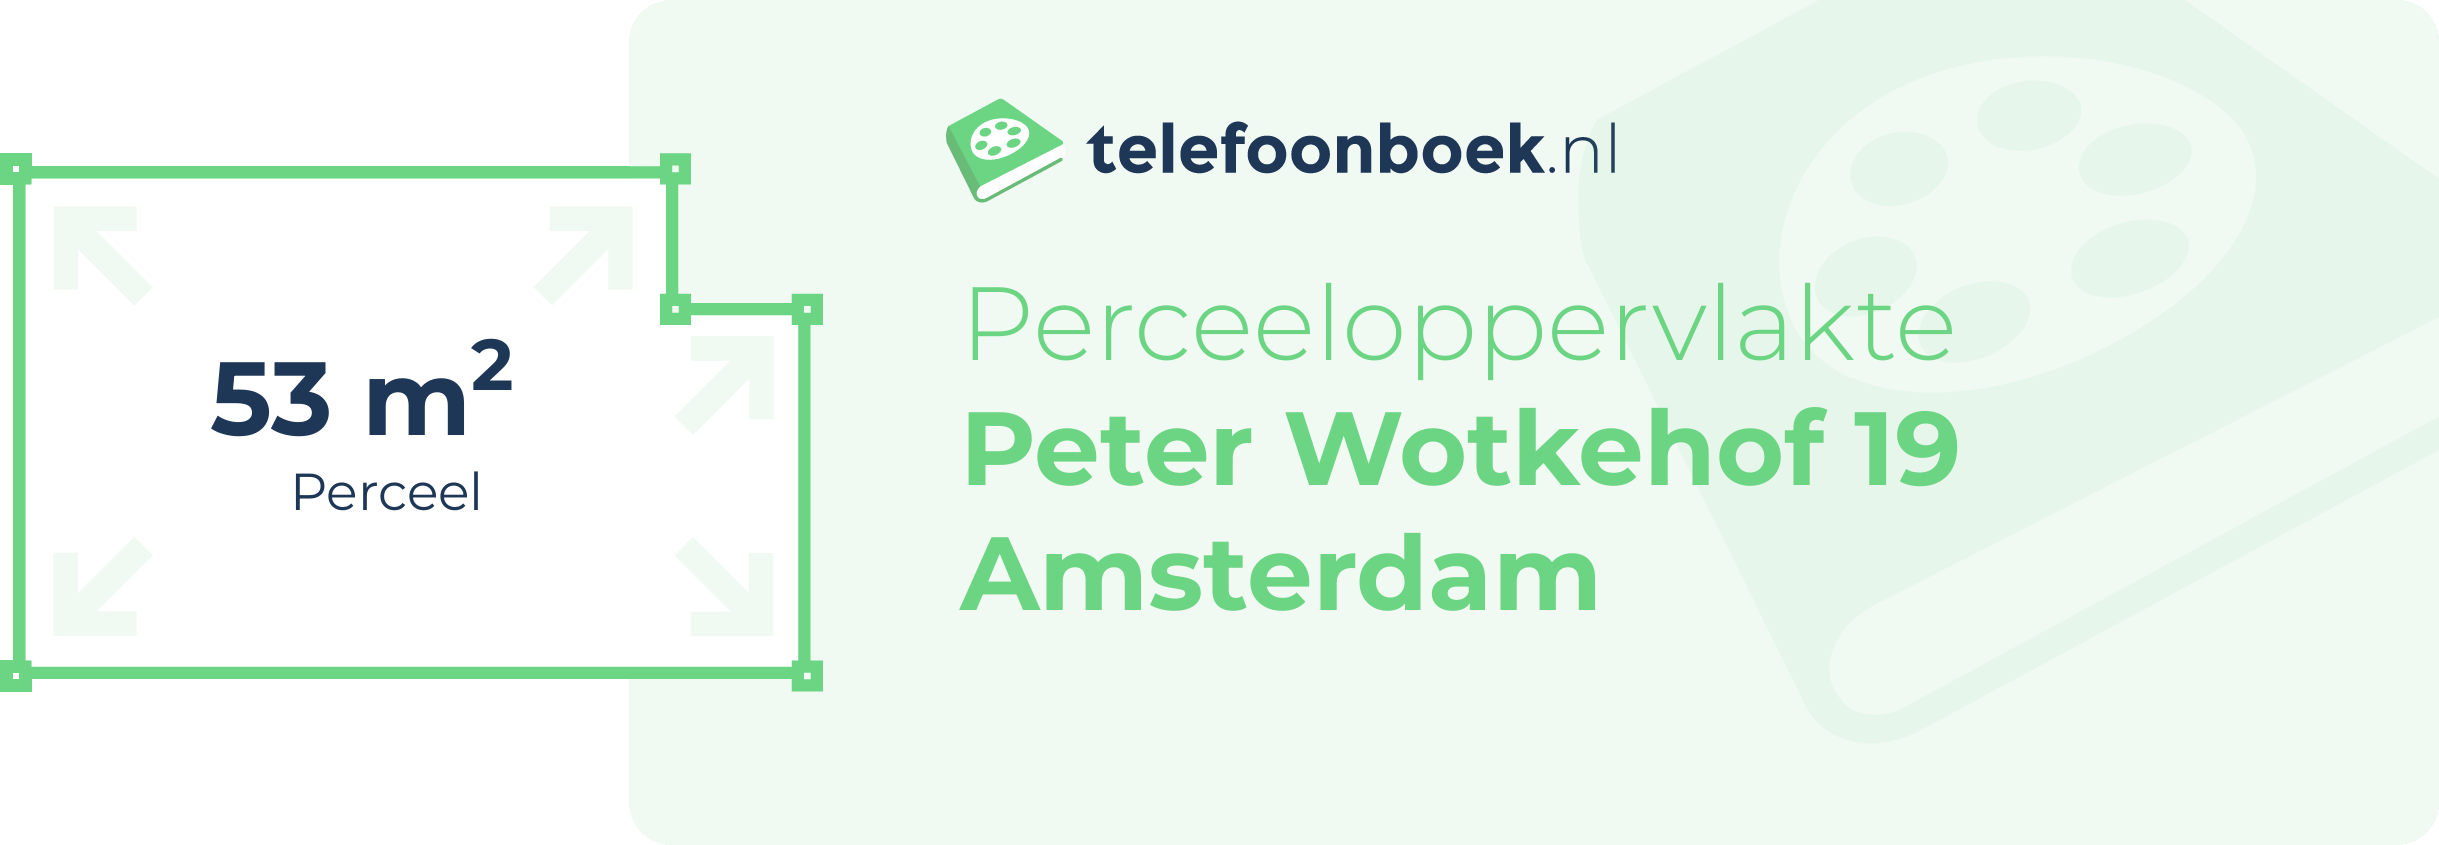 Perceeloppervlakte Peter Wotkehof 19 Amsterdam